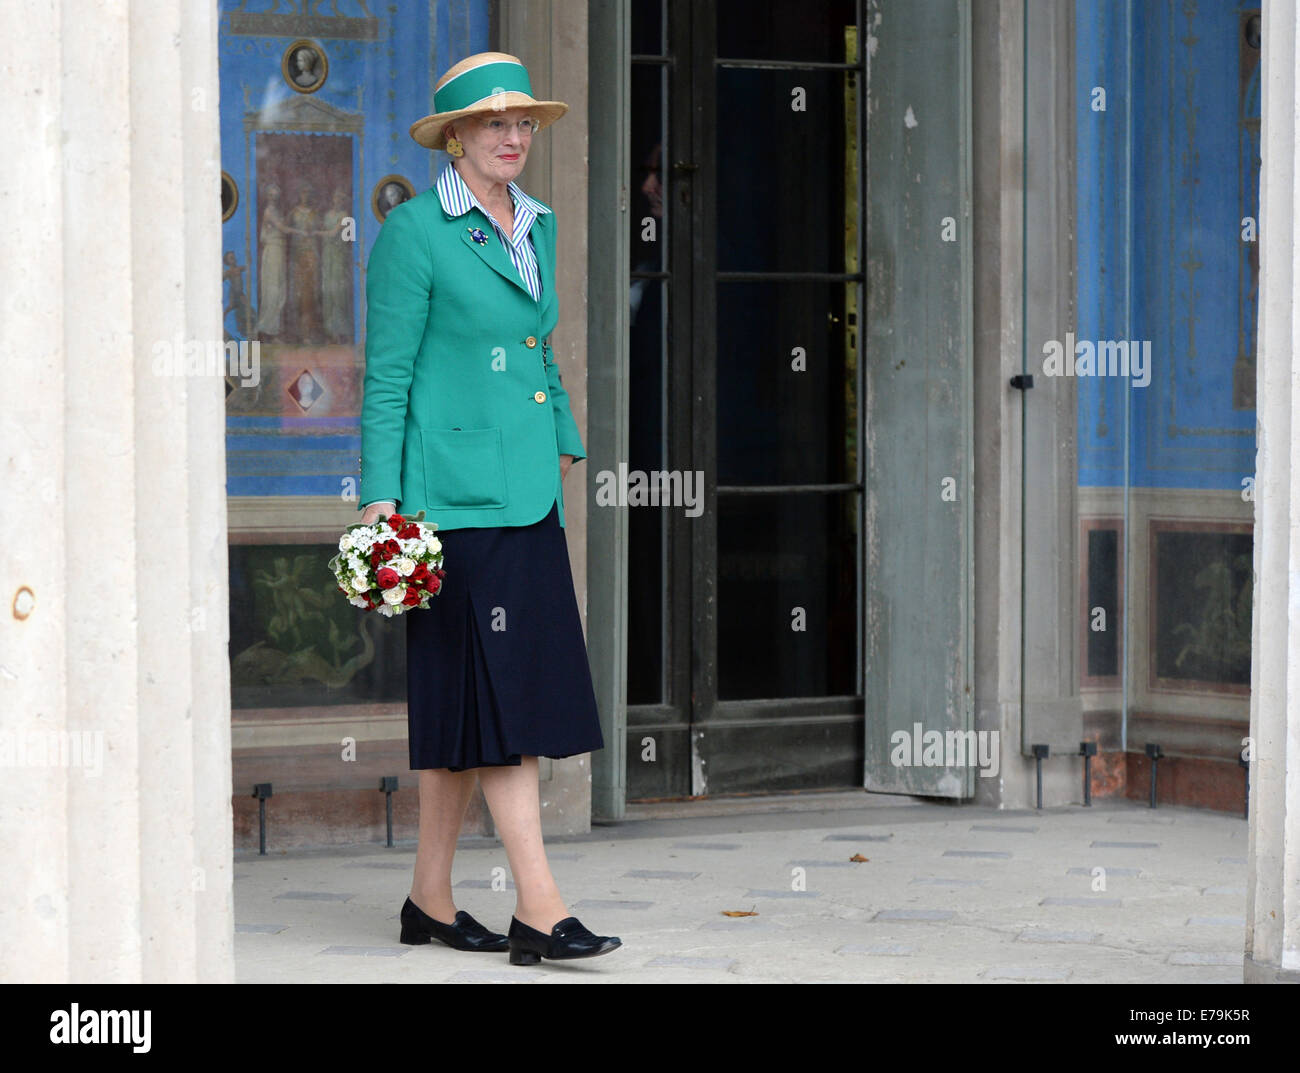 Potsdam, Allemagne. Sep 10, 2014. La Reine Margrethe II de Danemark promenades autour du palais de Charlottenhof de Sanssouci à Potsdam, Allemagne, 10 septembre 2014. Photo : Ralf Hirschberger/dpa/Alamy Live News Banque D'Images